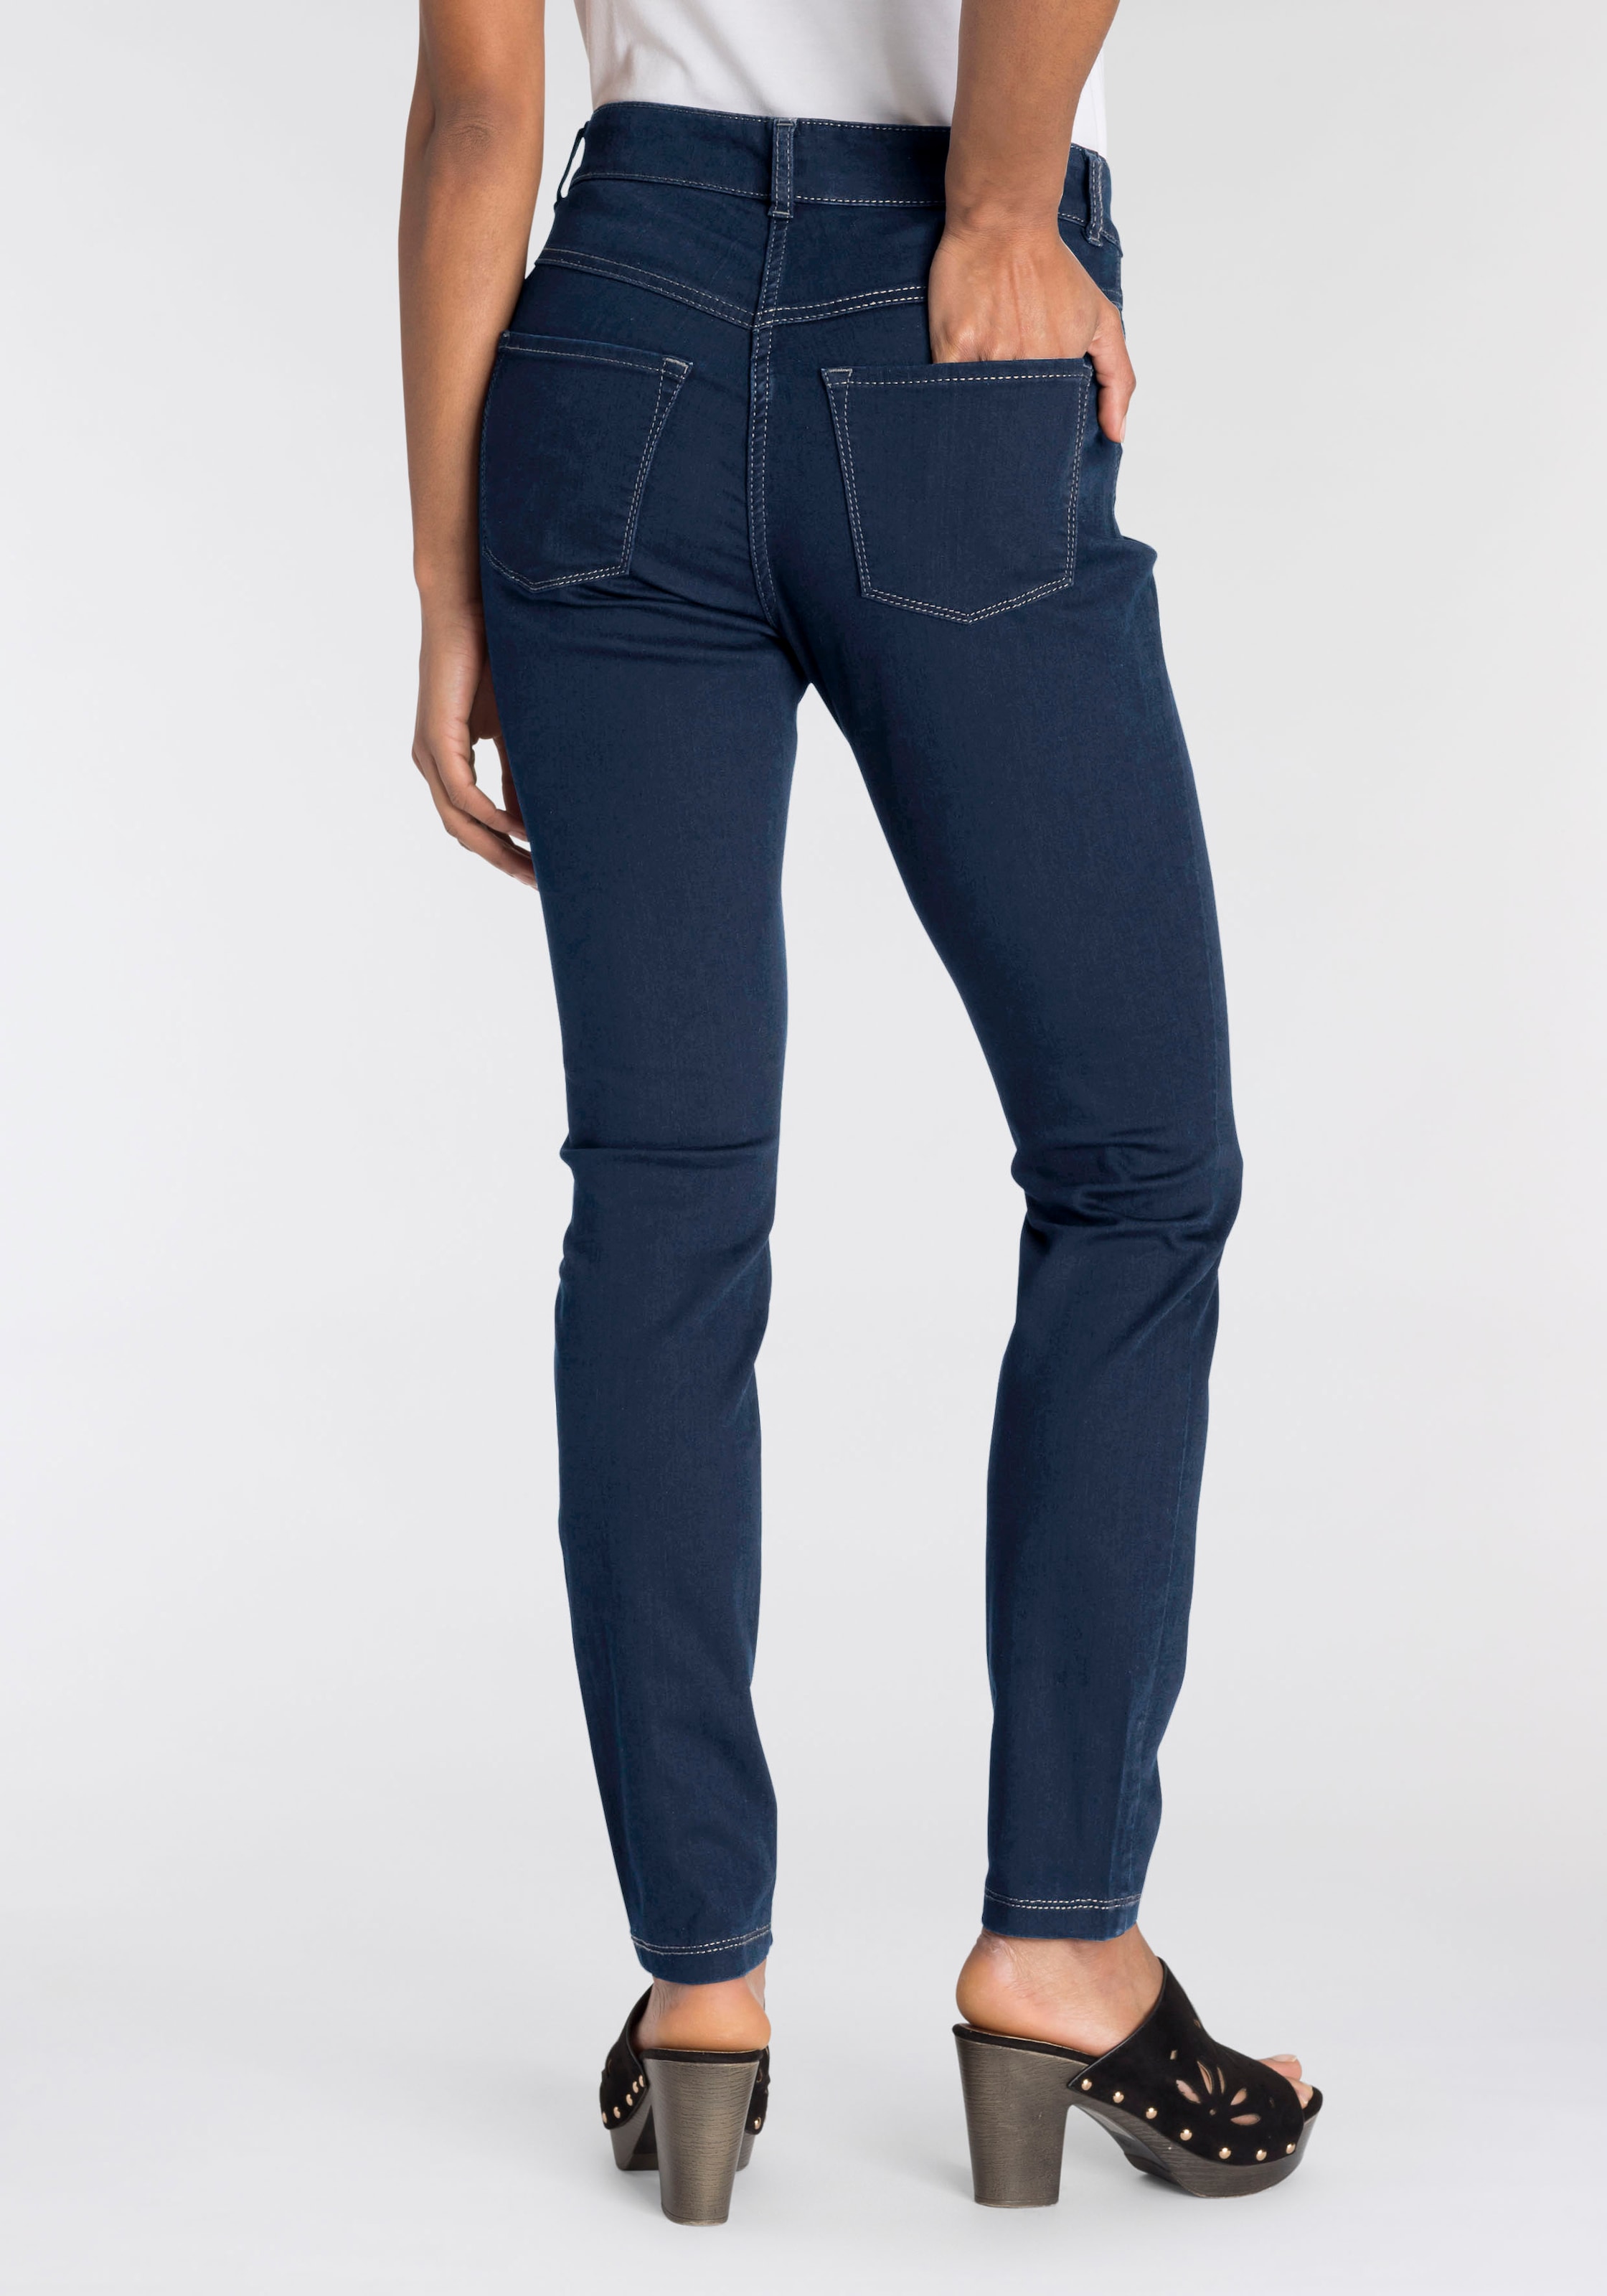 »Hiperstretch-Skinny«, Tag Power-Stretch Skinny-fit-Jeans den bequem Qualität sitzt ganzen MAC bei OTTOversand